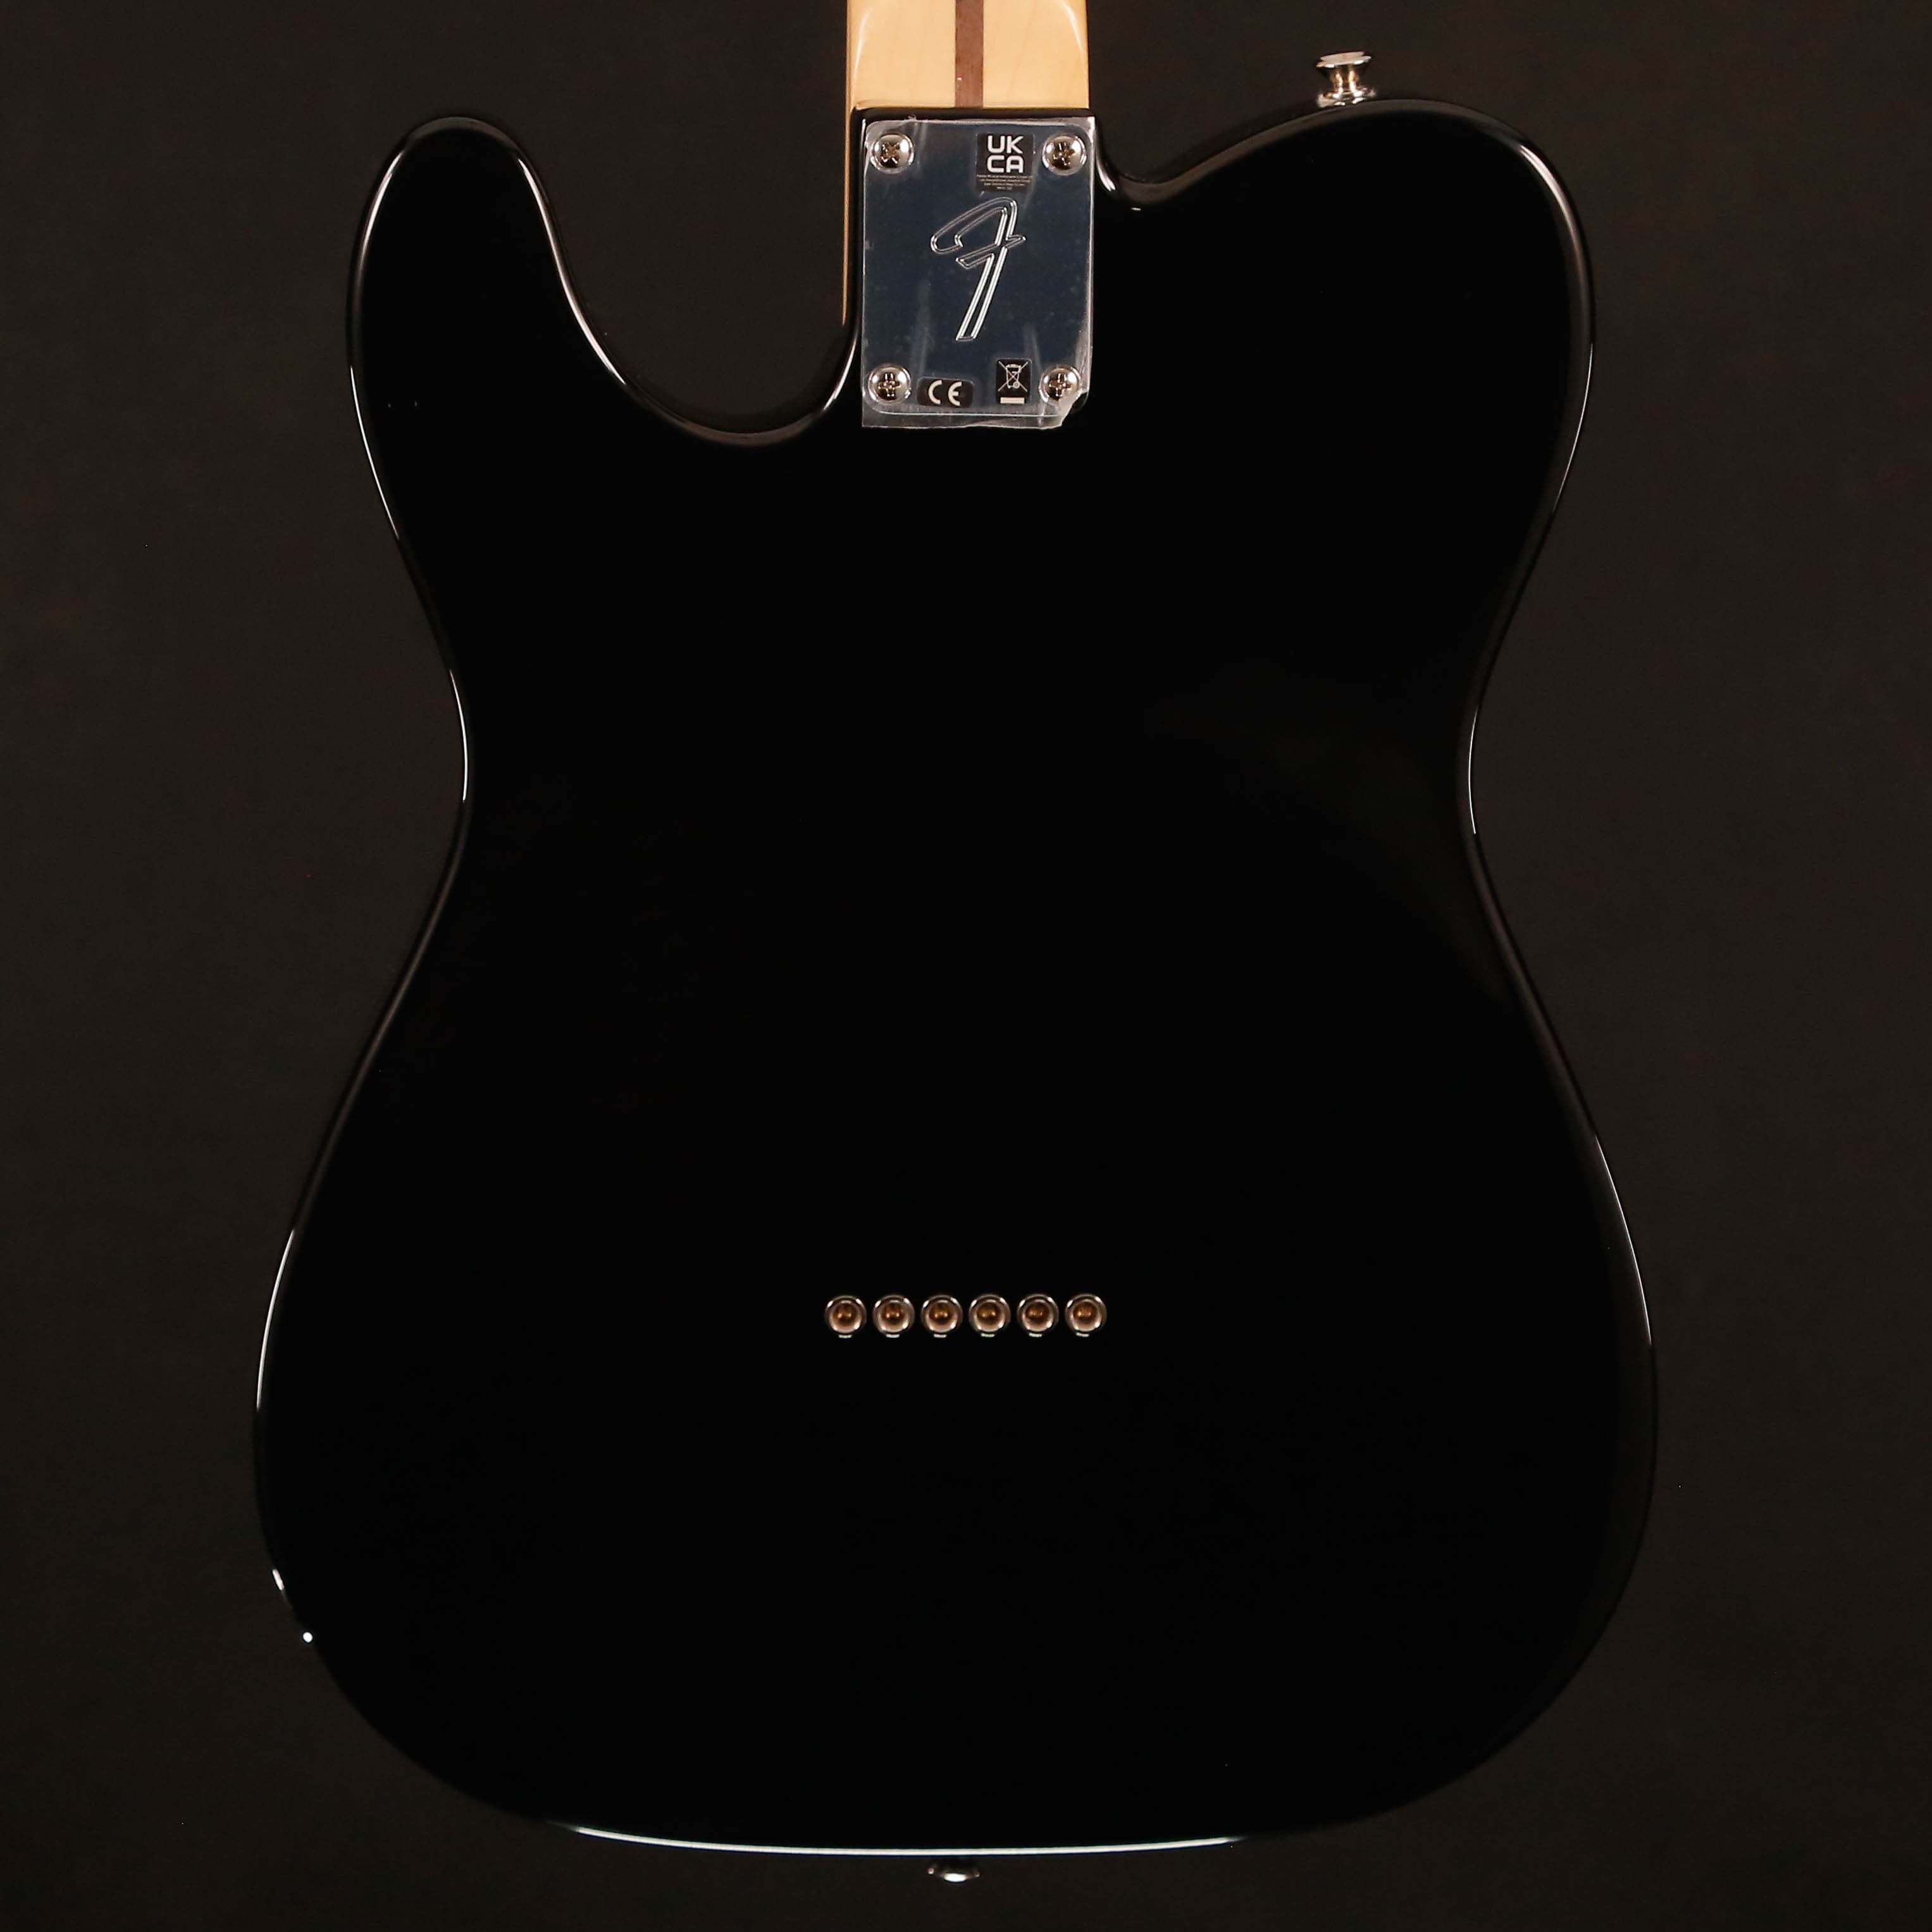 Fender Player Telecaster, Maple Fb, Black